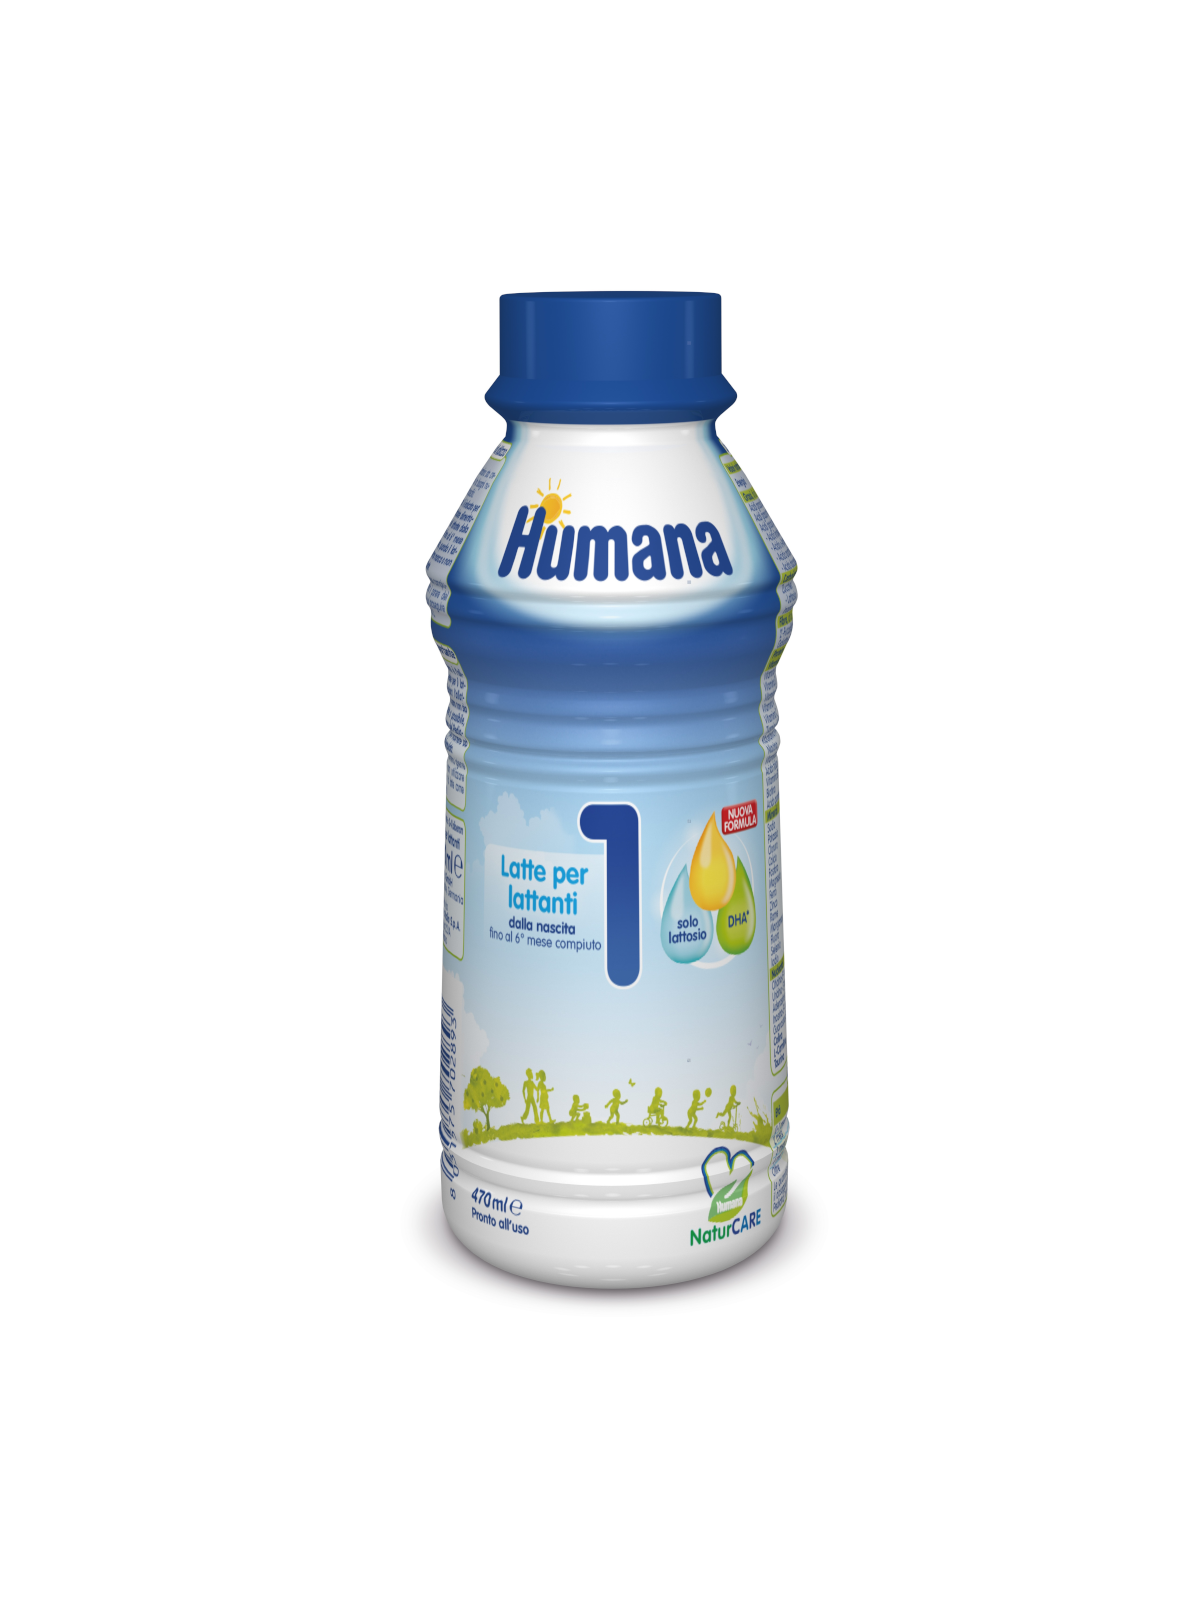 HUMANA Latte 1 liquido 470 ml - Bimbostore